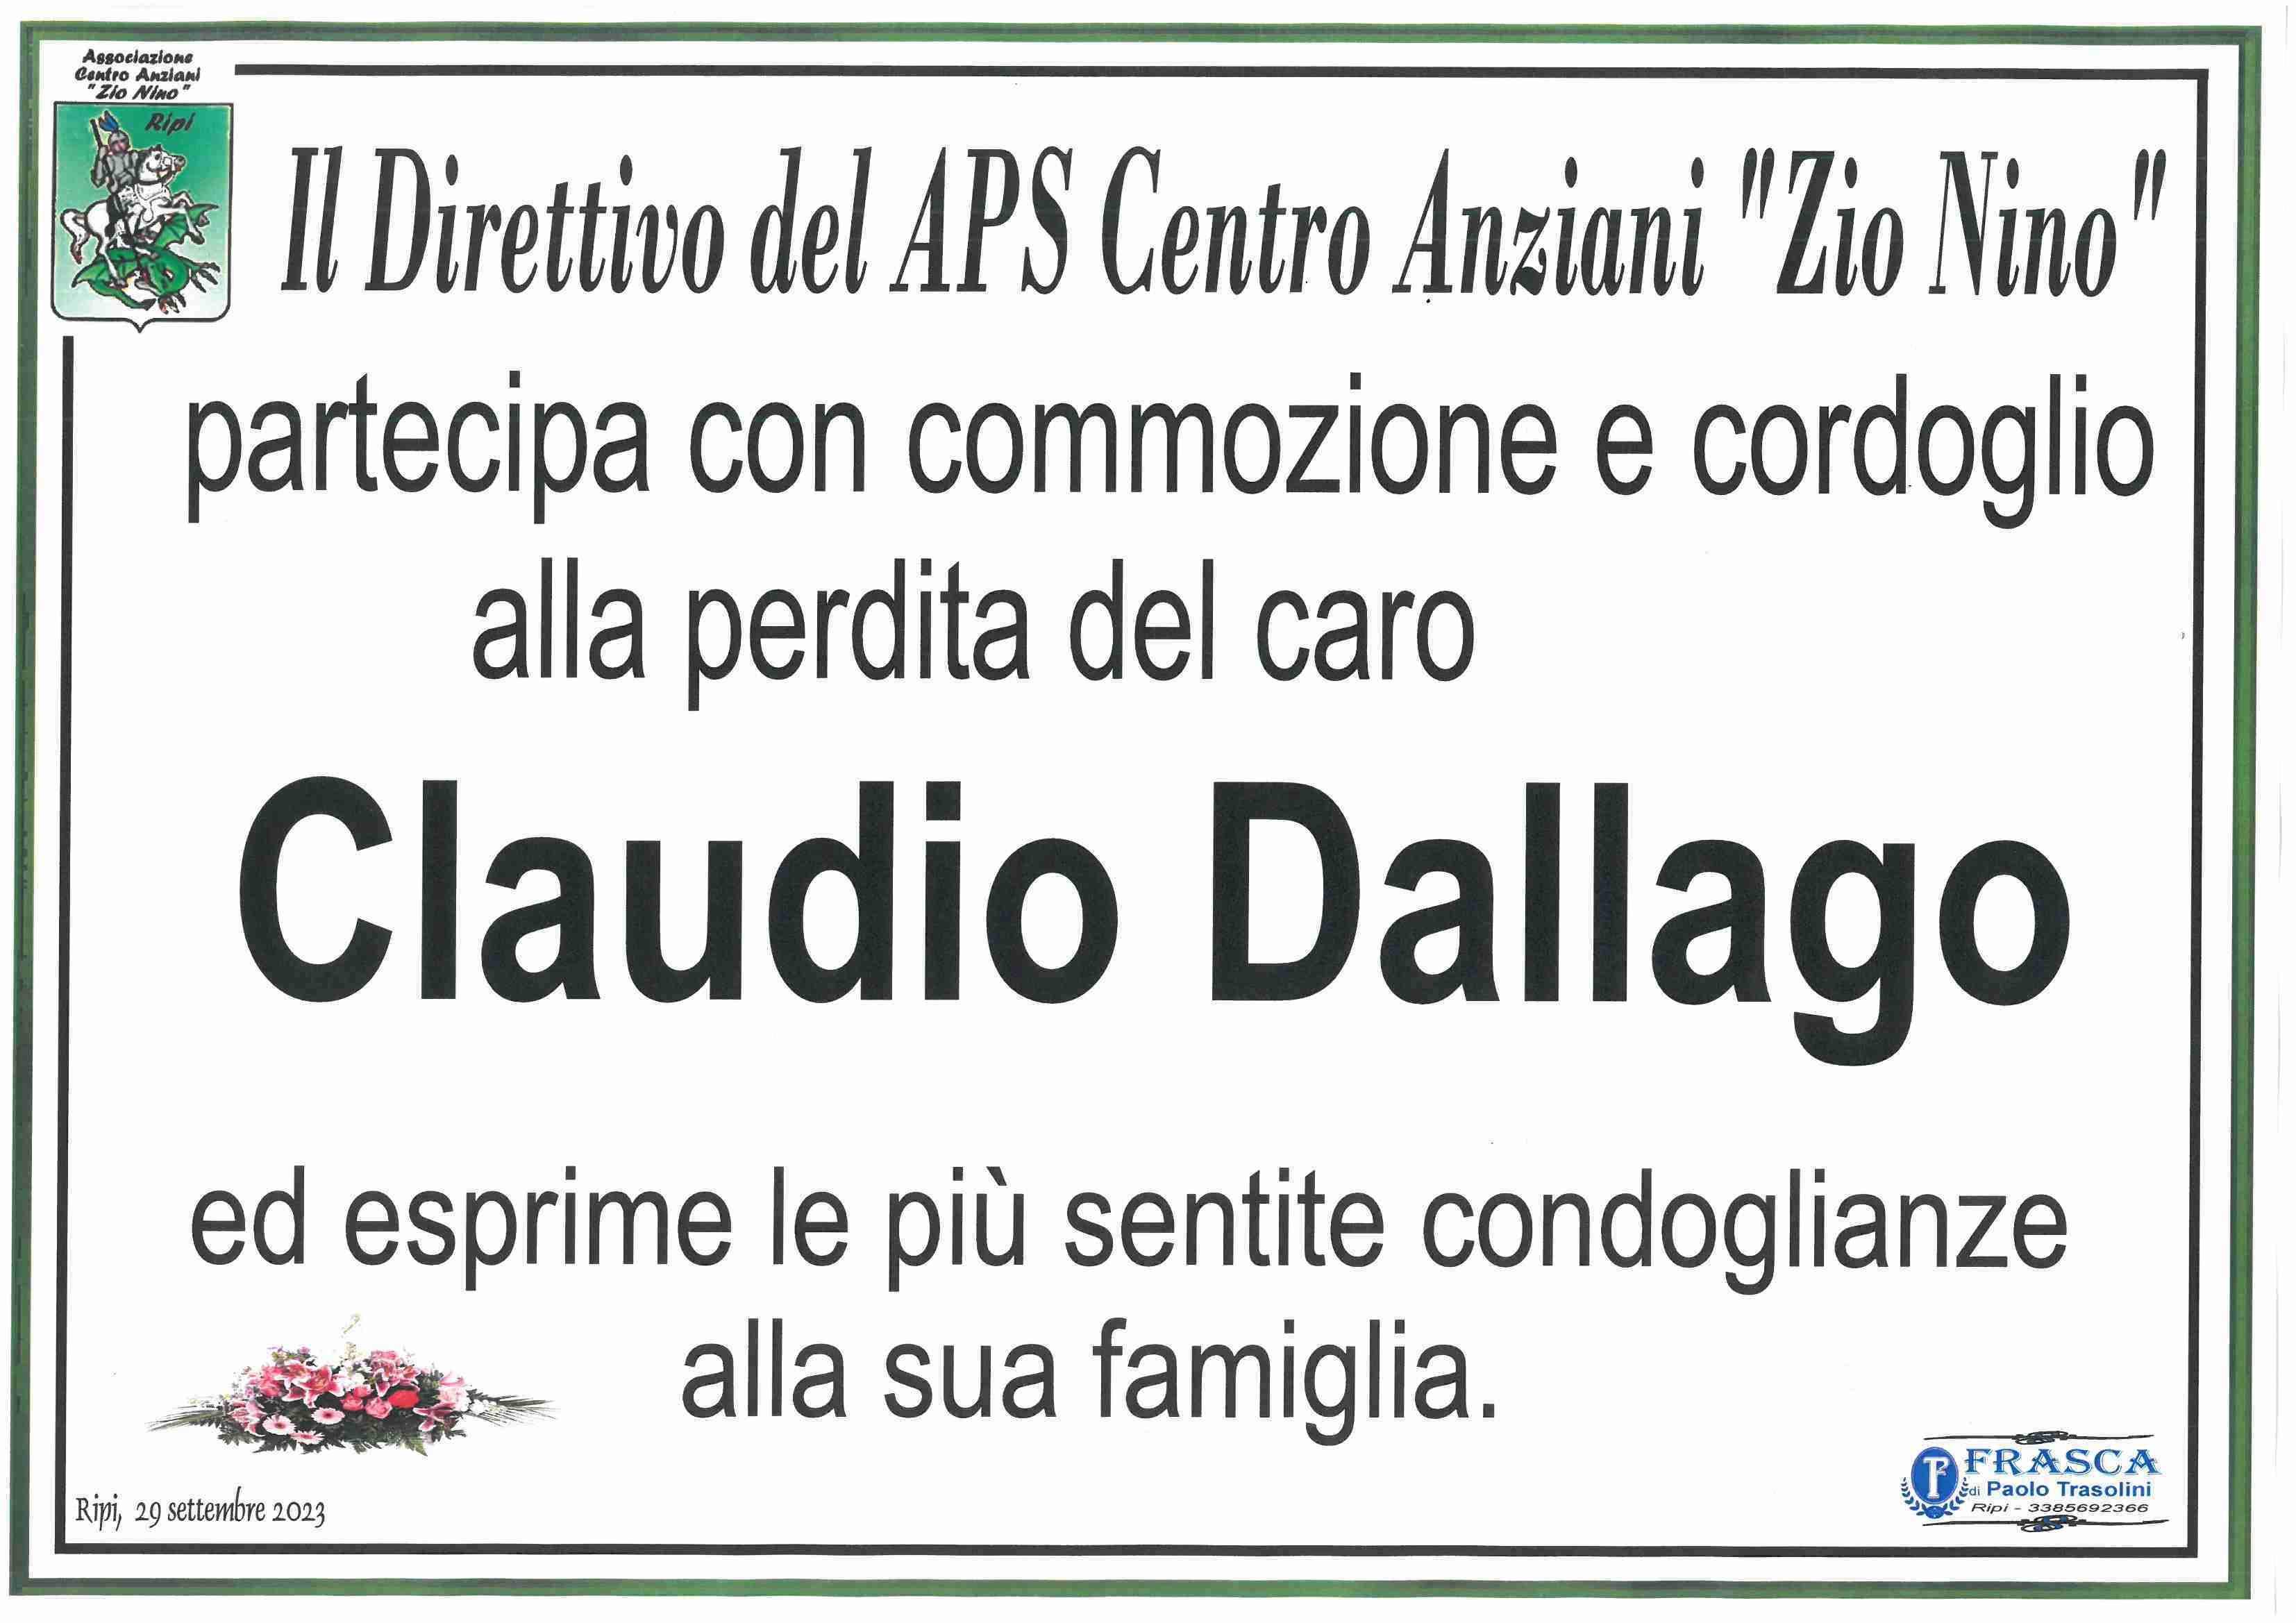 Claudio Dallago